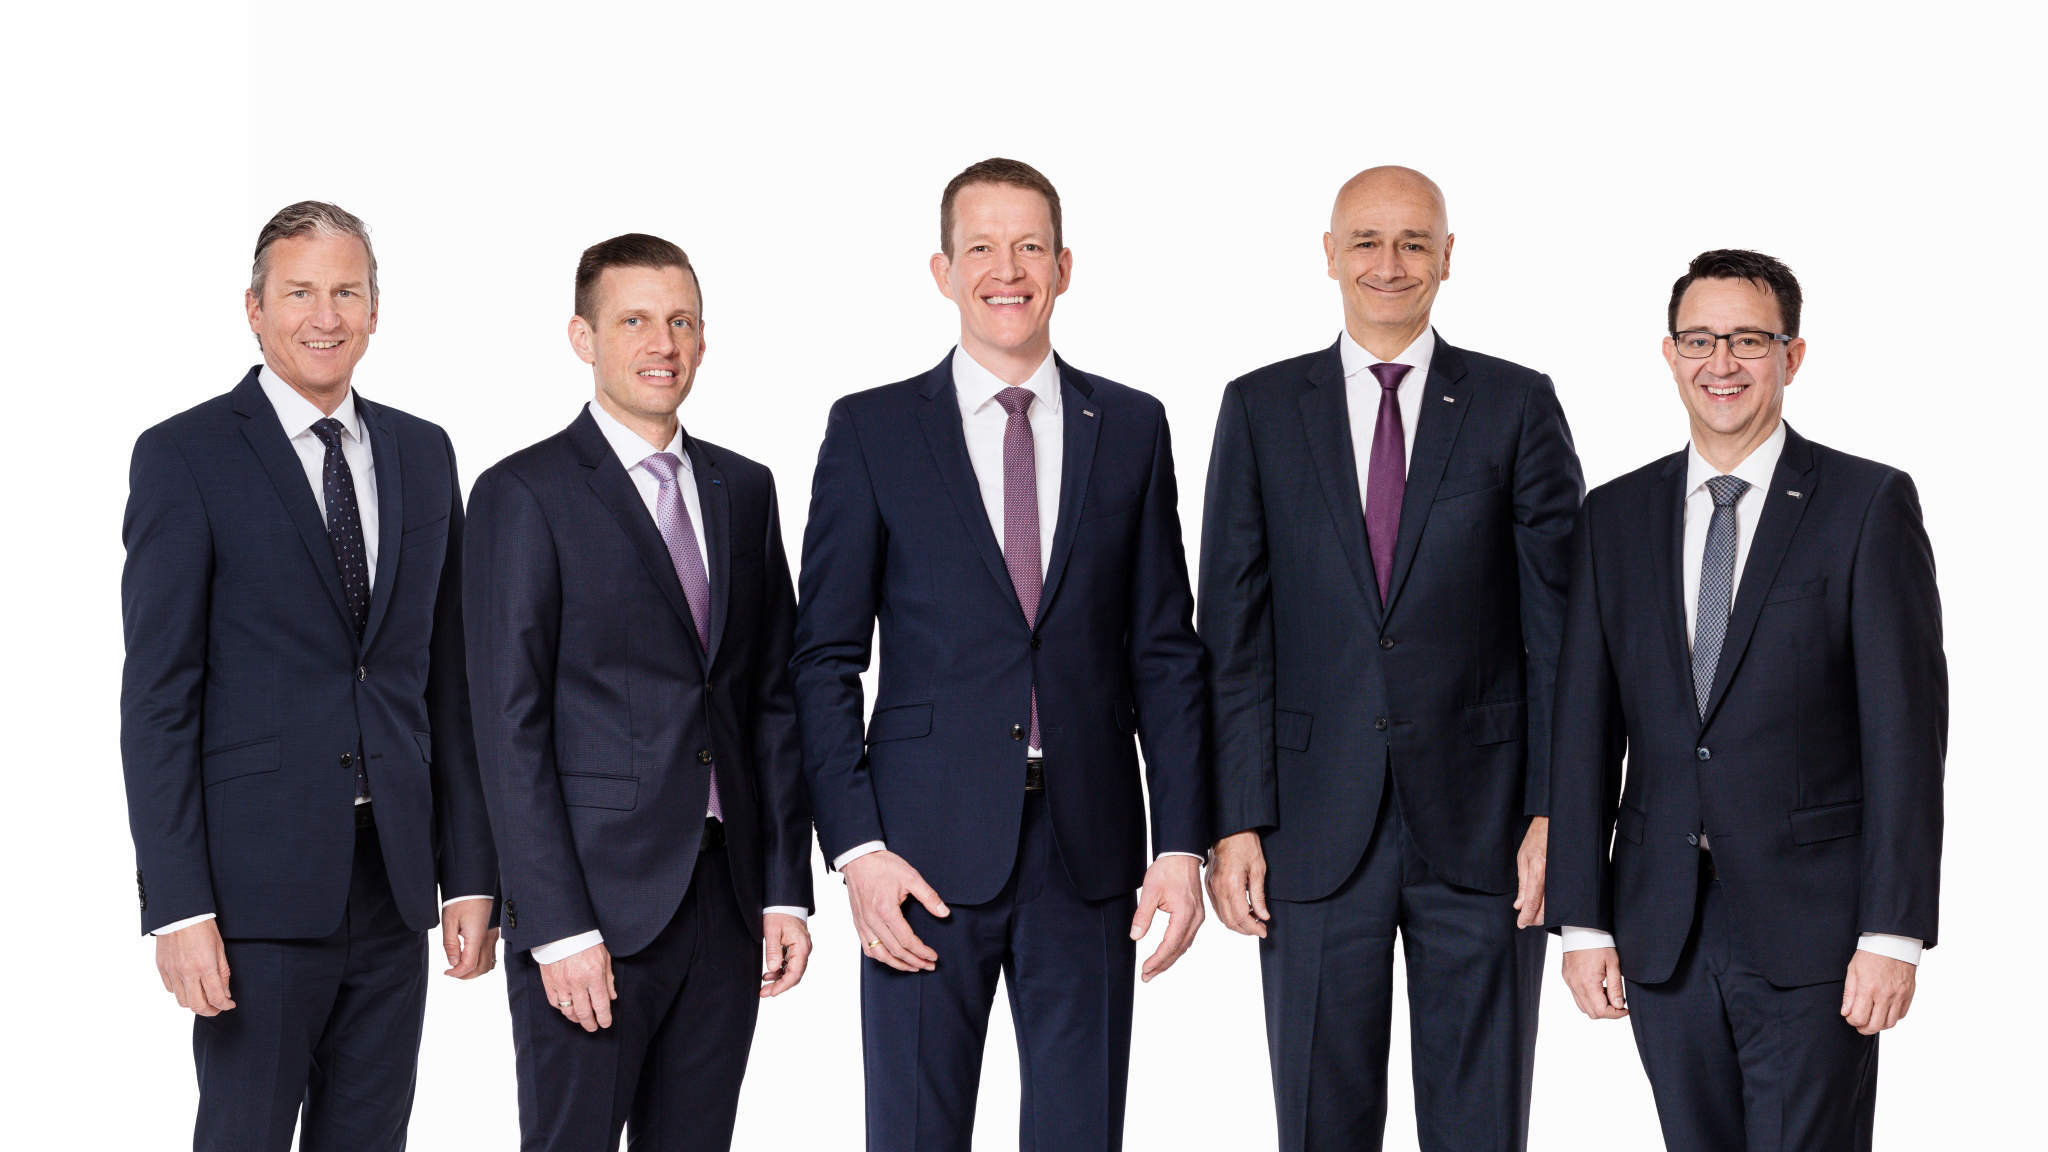 Die nächste Generation im Vorstand von DACHSER: Robert Erni, Alexander Tonn, Burkhard Eling, Edoardo Podestà und Stefan Hohm (v.l.n.r.).